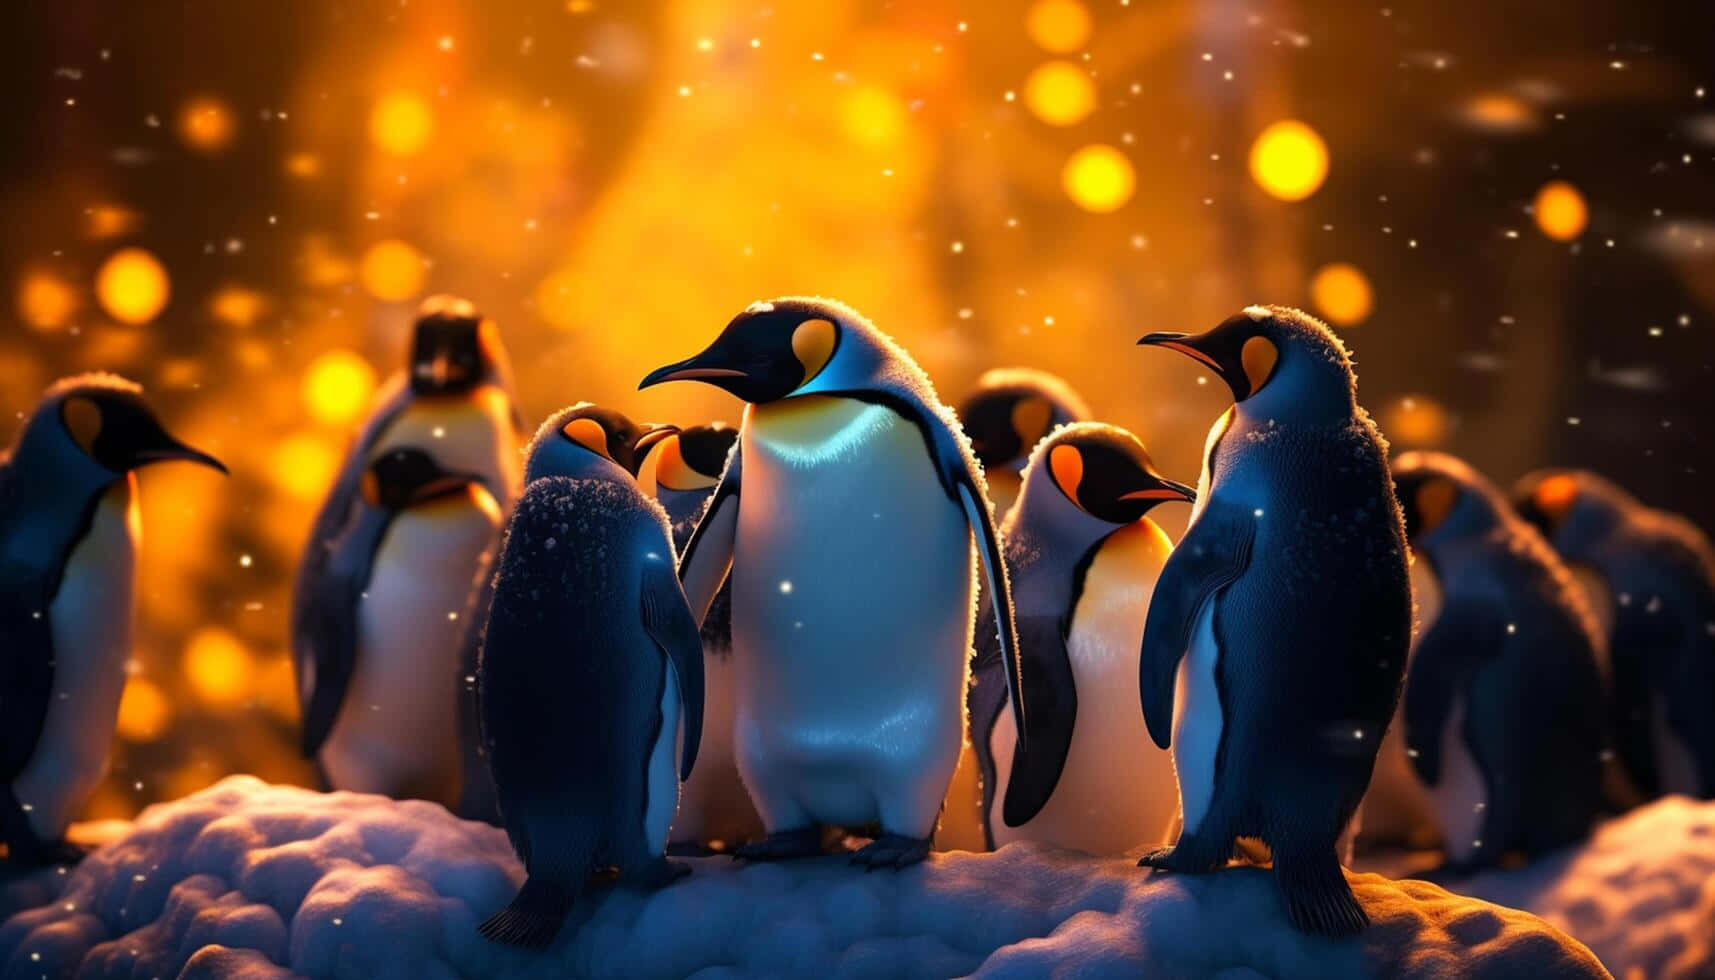 Emperor Penguins Glowing Sunset Wallpaper